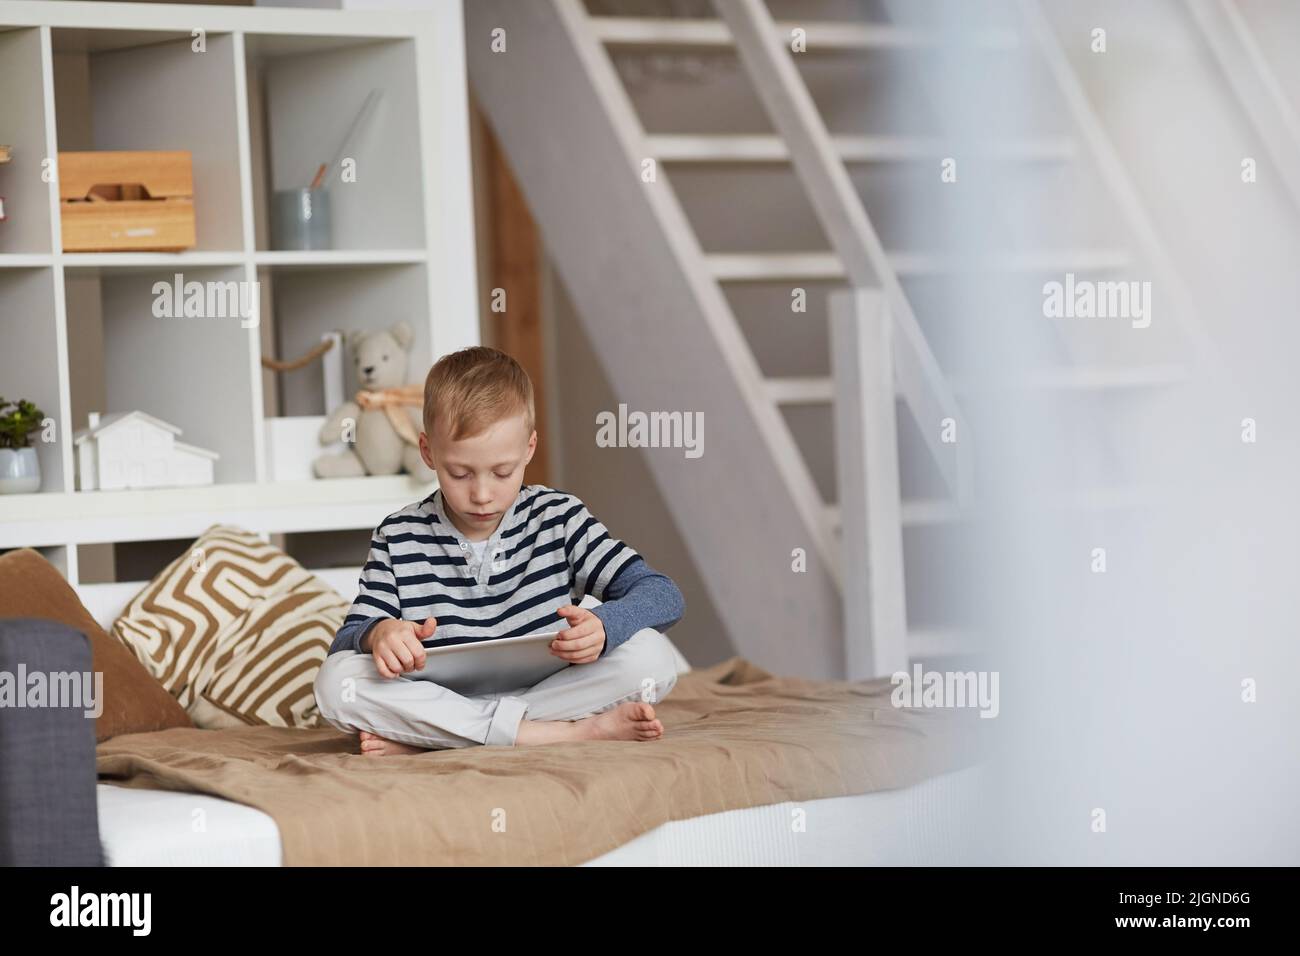 Ernsthafter kleiner Junge mit blonden Haaren, der mit gekreuzten Beinen auf dem Bett sitzt und Online-Aufgaben auf dem Tablet ausführt Stockfoto